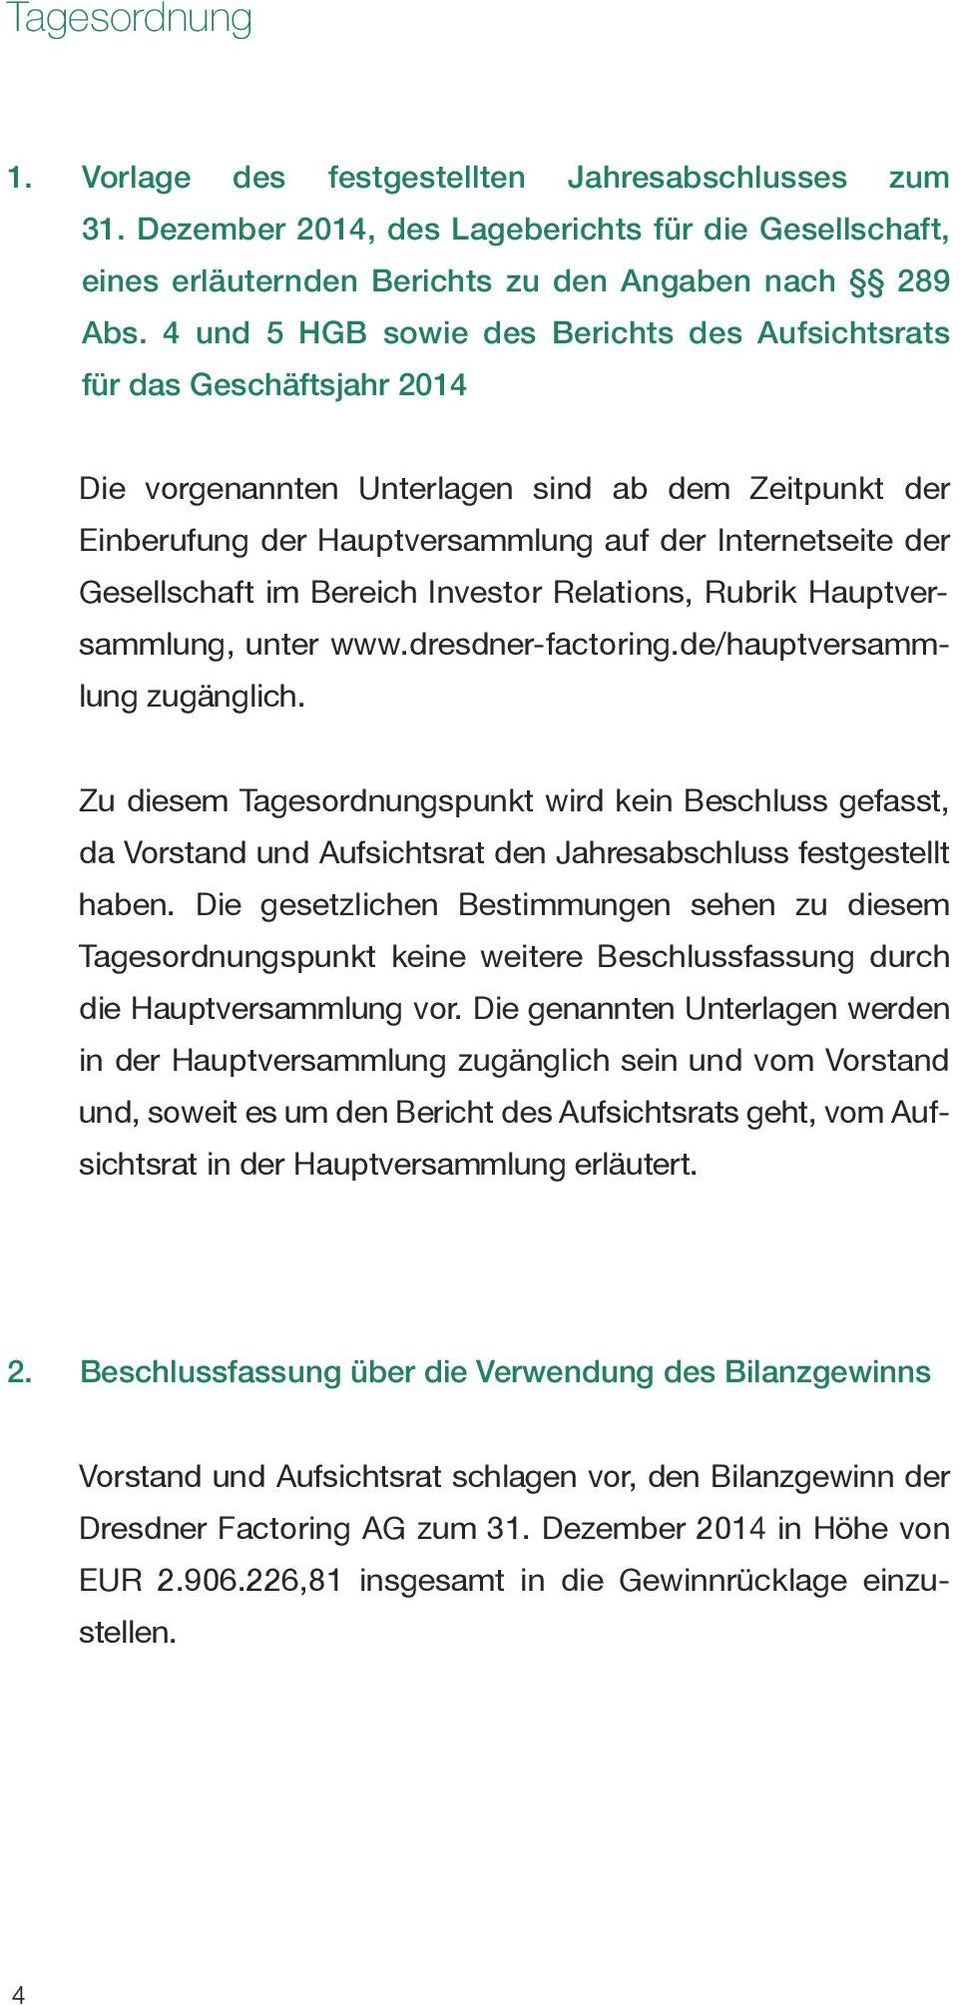 Gesellschaft im Bereich Investor Relations, Rubrik Hauptversammlung, unter www.dresdner-factoring.de/hauptversammlung zugänglich.